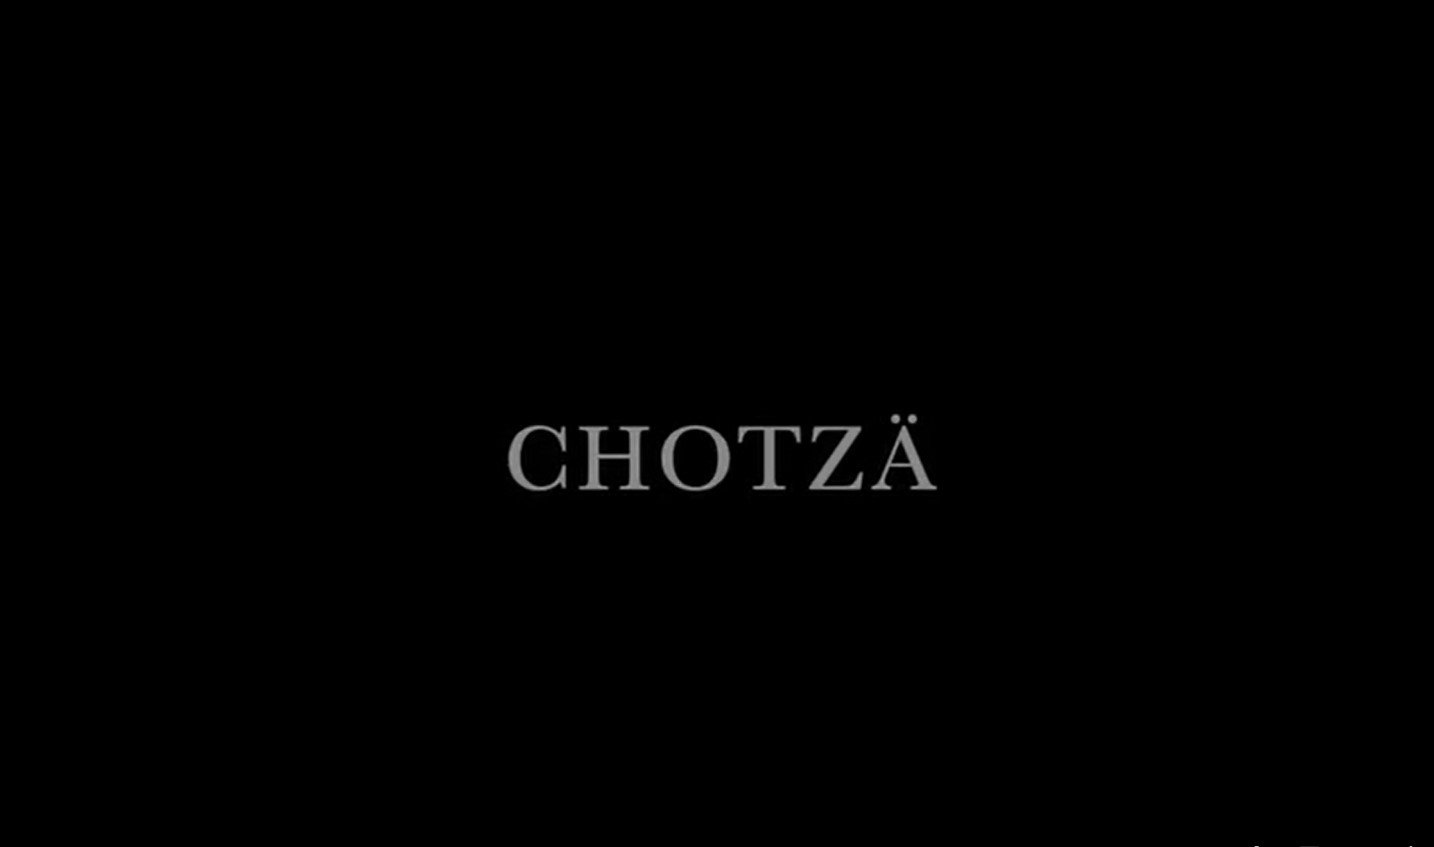 chotzä